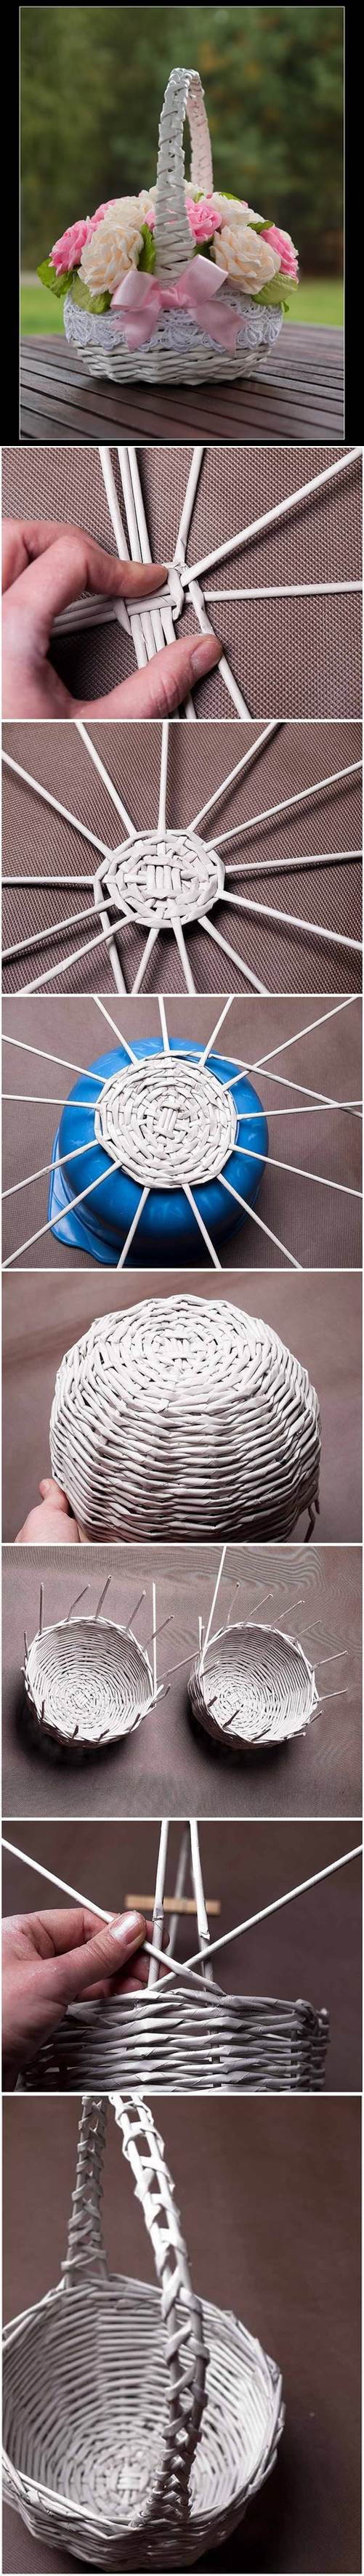 DIY Newspaper Tubes Weaving Basket 2